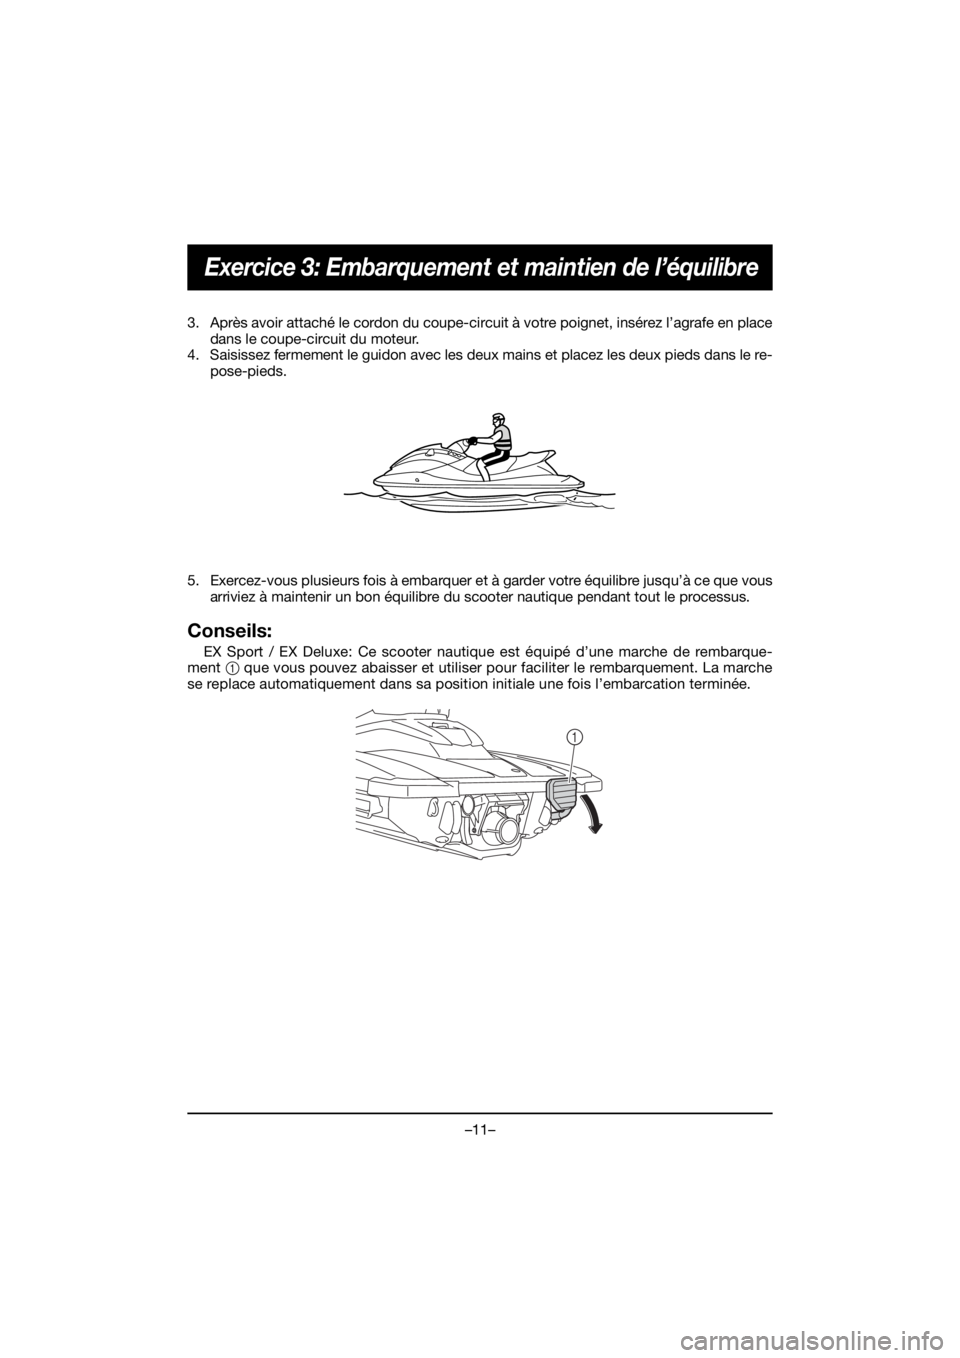 YAMAHA EX 2020  Manual de utilização (in Portuguese) –11–
Exercice 3: Embarquement et maintien de l’équilibre
3. Après avoir attaché le cordon du coupe-circuit à votre poignet, insérez l’agrafe en place
dans le coupe-circuit du moteur.
4. S